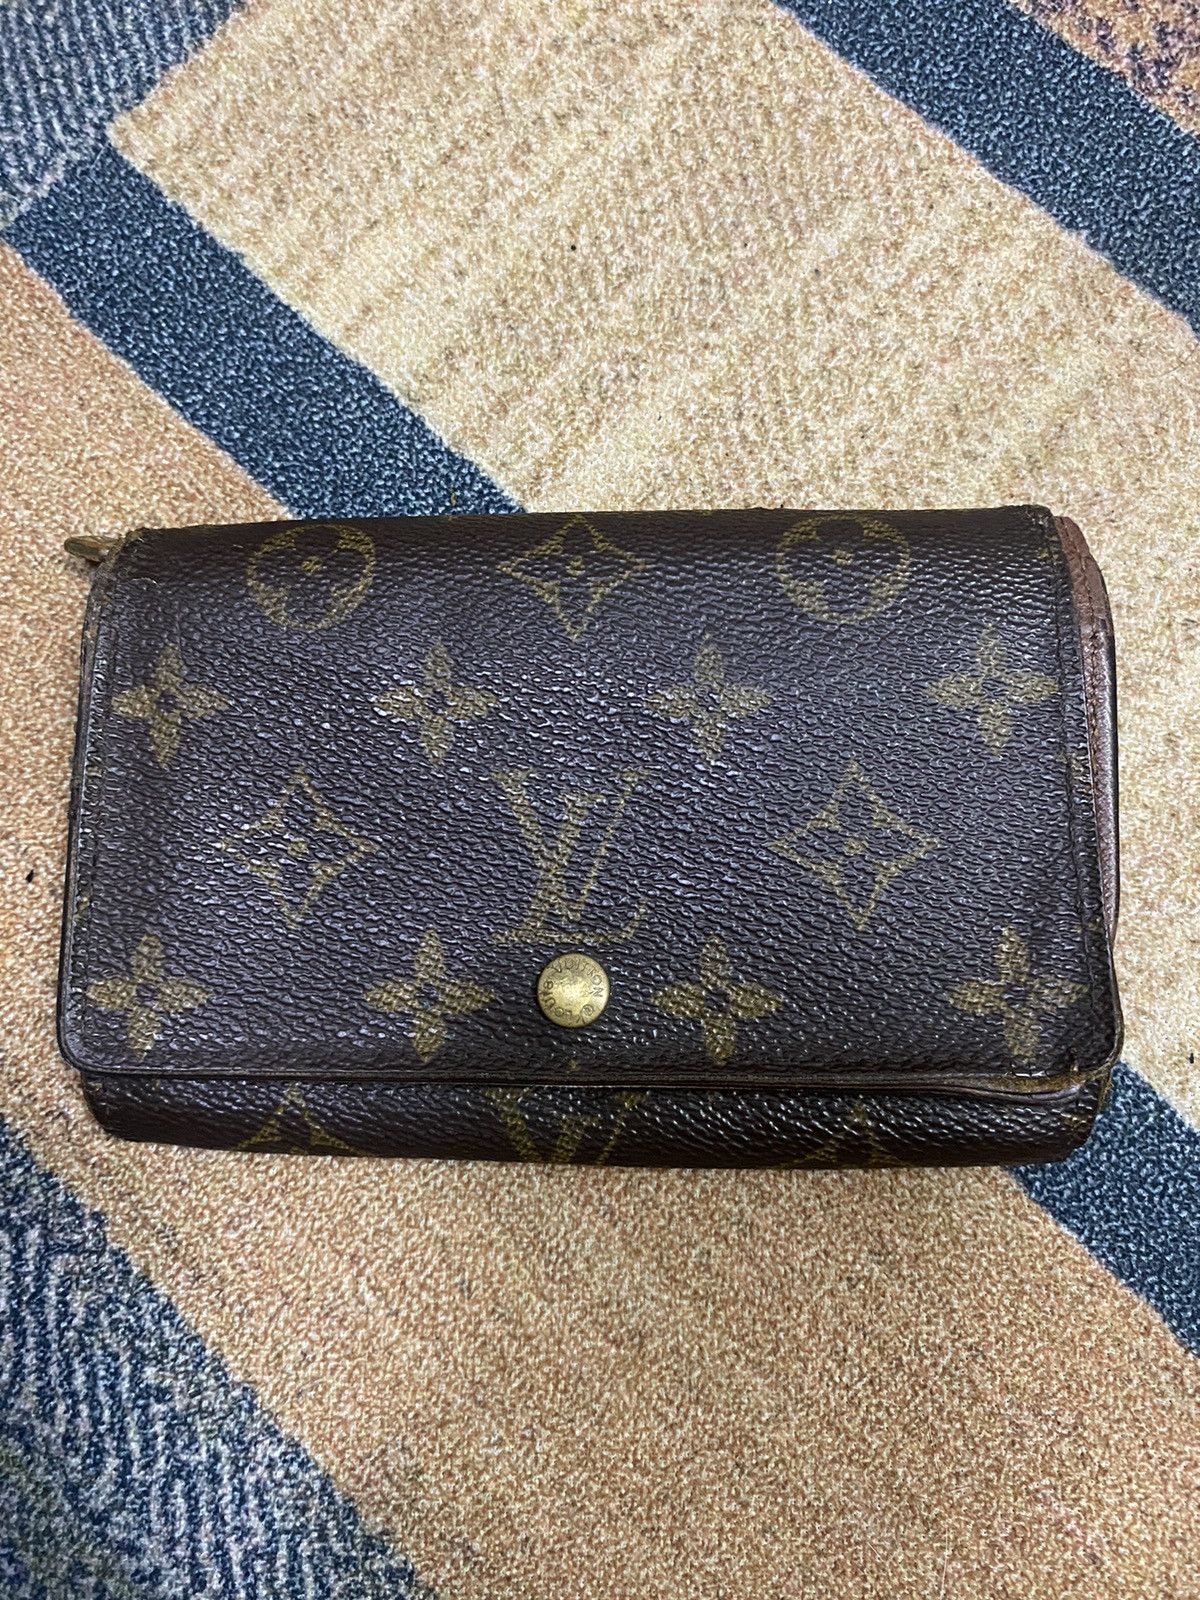 Authentic Vintage Louis Vuitton Wallet - 18